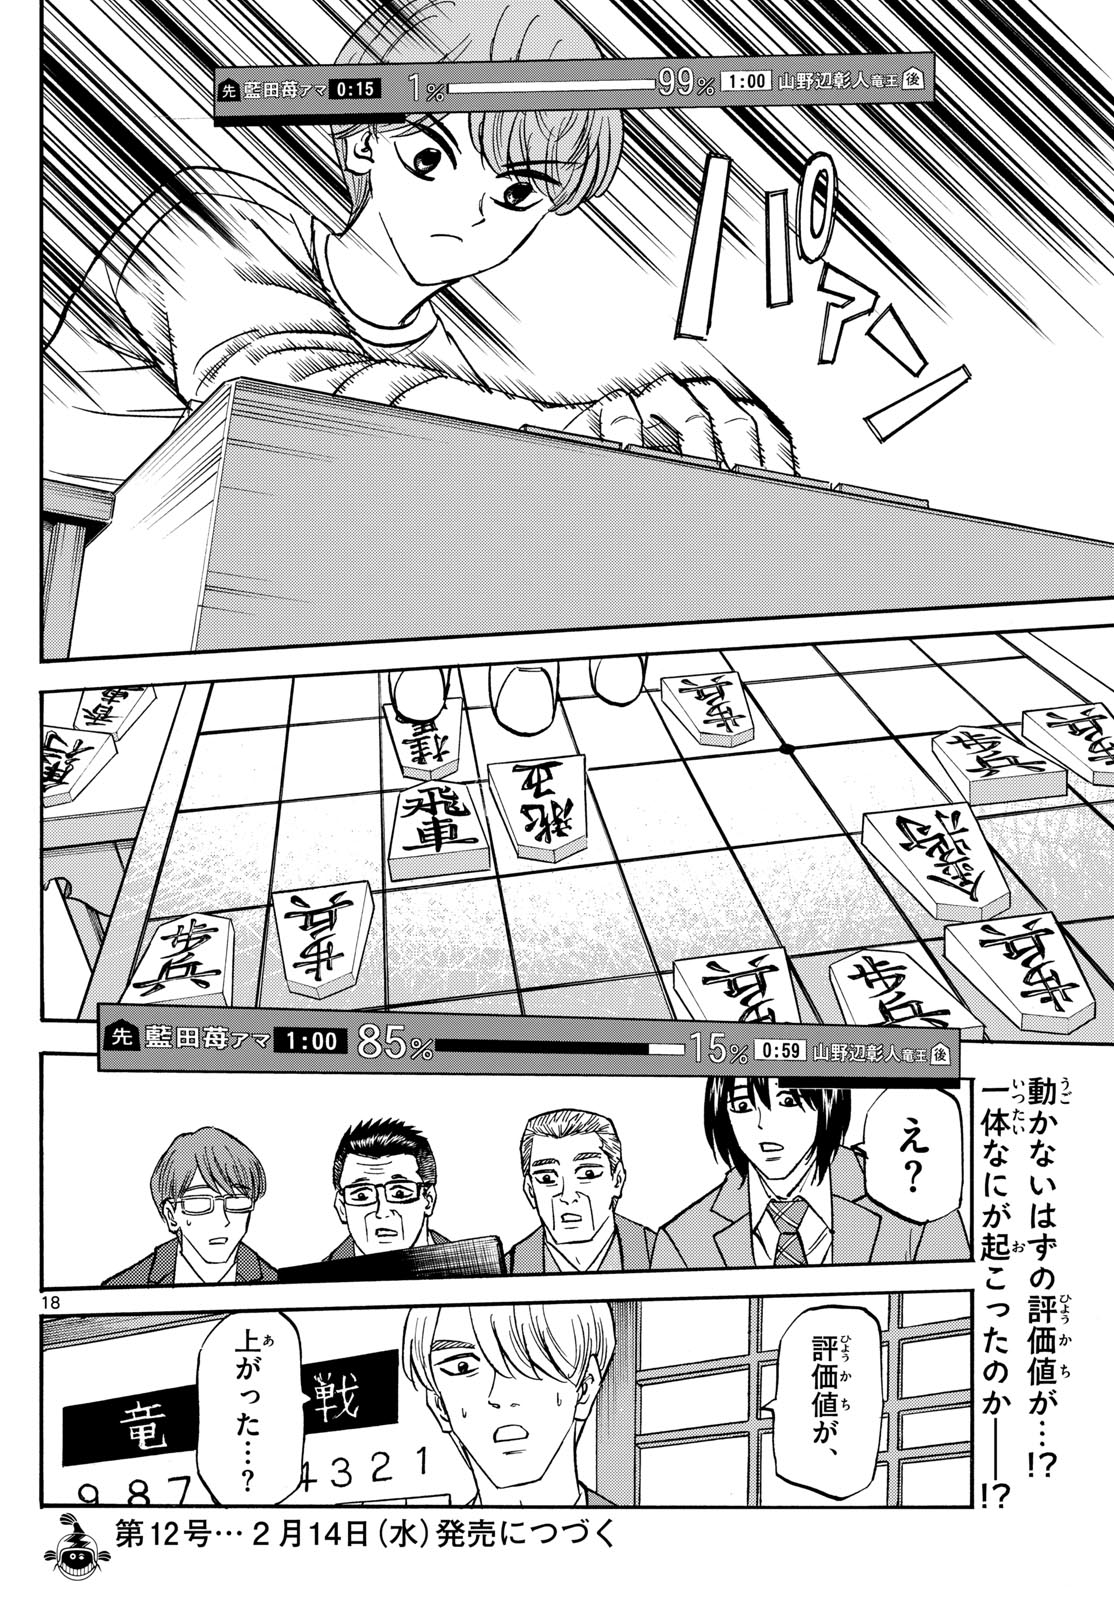 Tatsu to Ichigo - Chapter 178 - Page 18